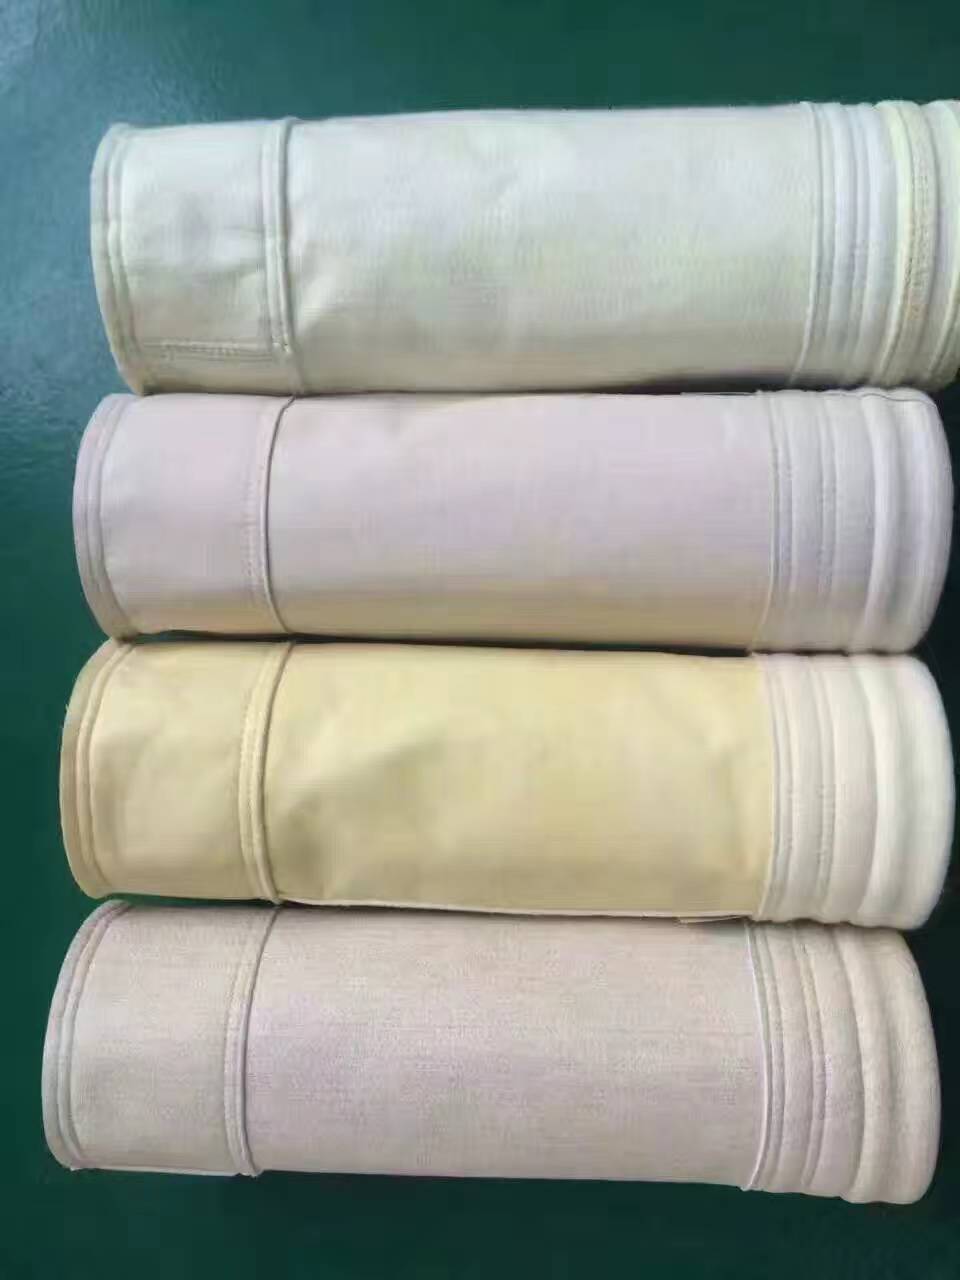 除尘布袋规格型号-除尘布袋制作标准-除尘布袋种类